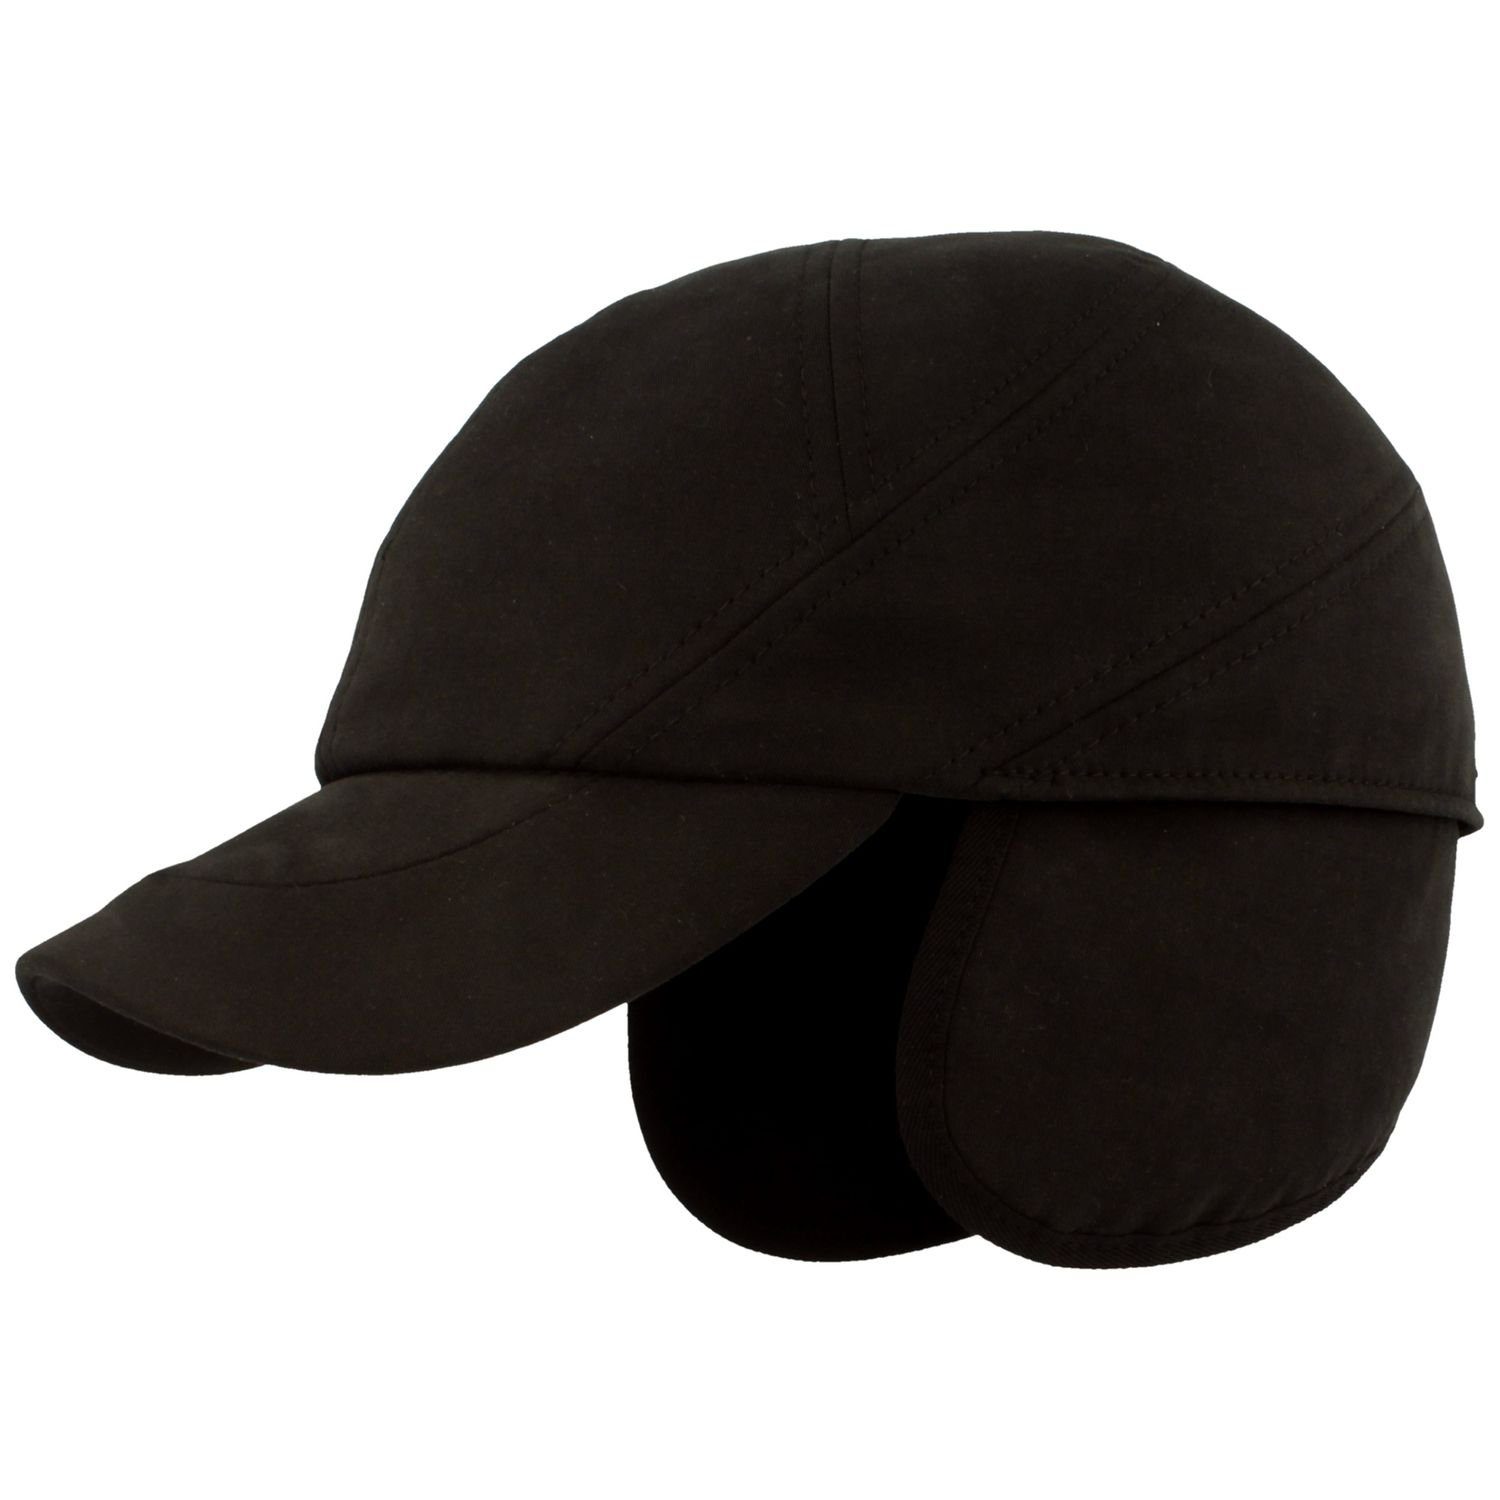 Balke Baseball Cap mit Ohrenschutz und Thermolite-Ausstattung 500 schwarz